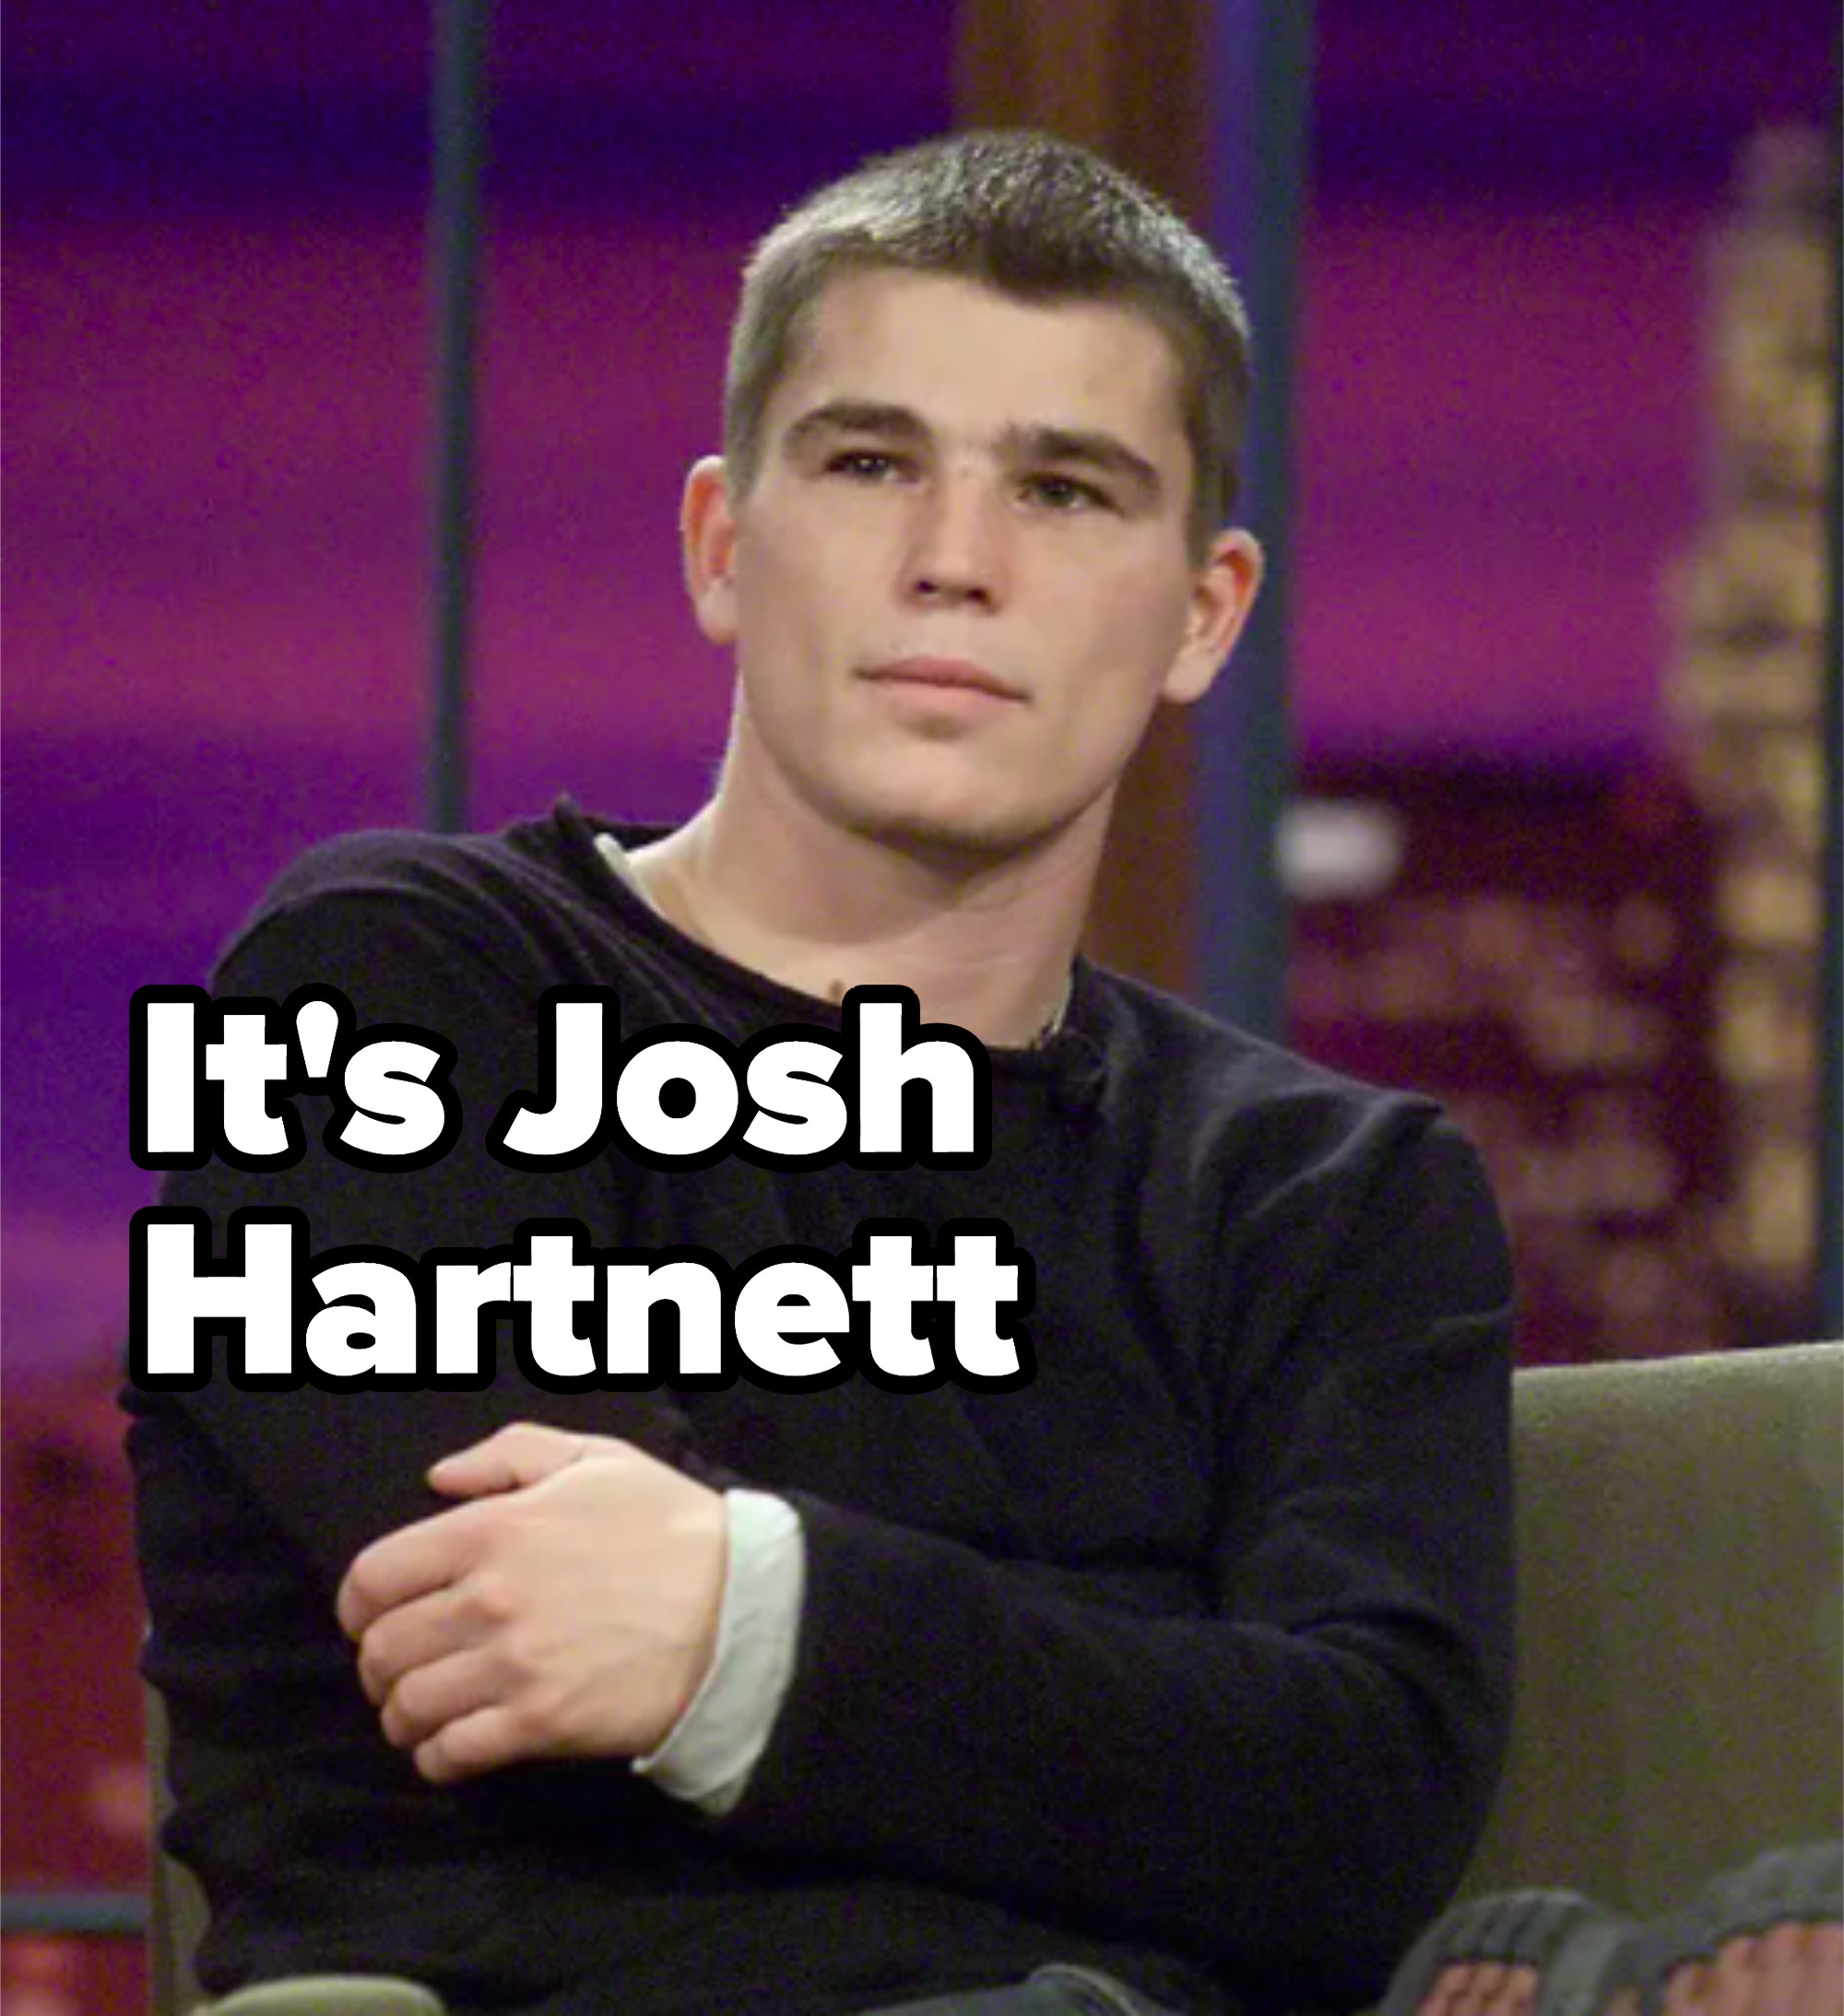 Josh Hartnett on the tonight show